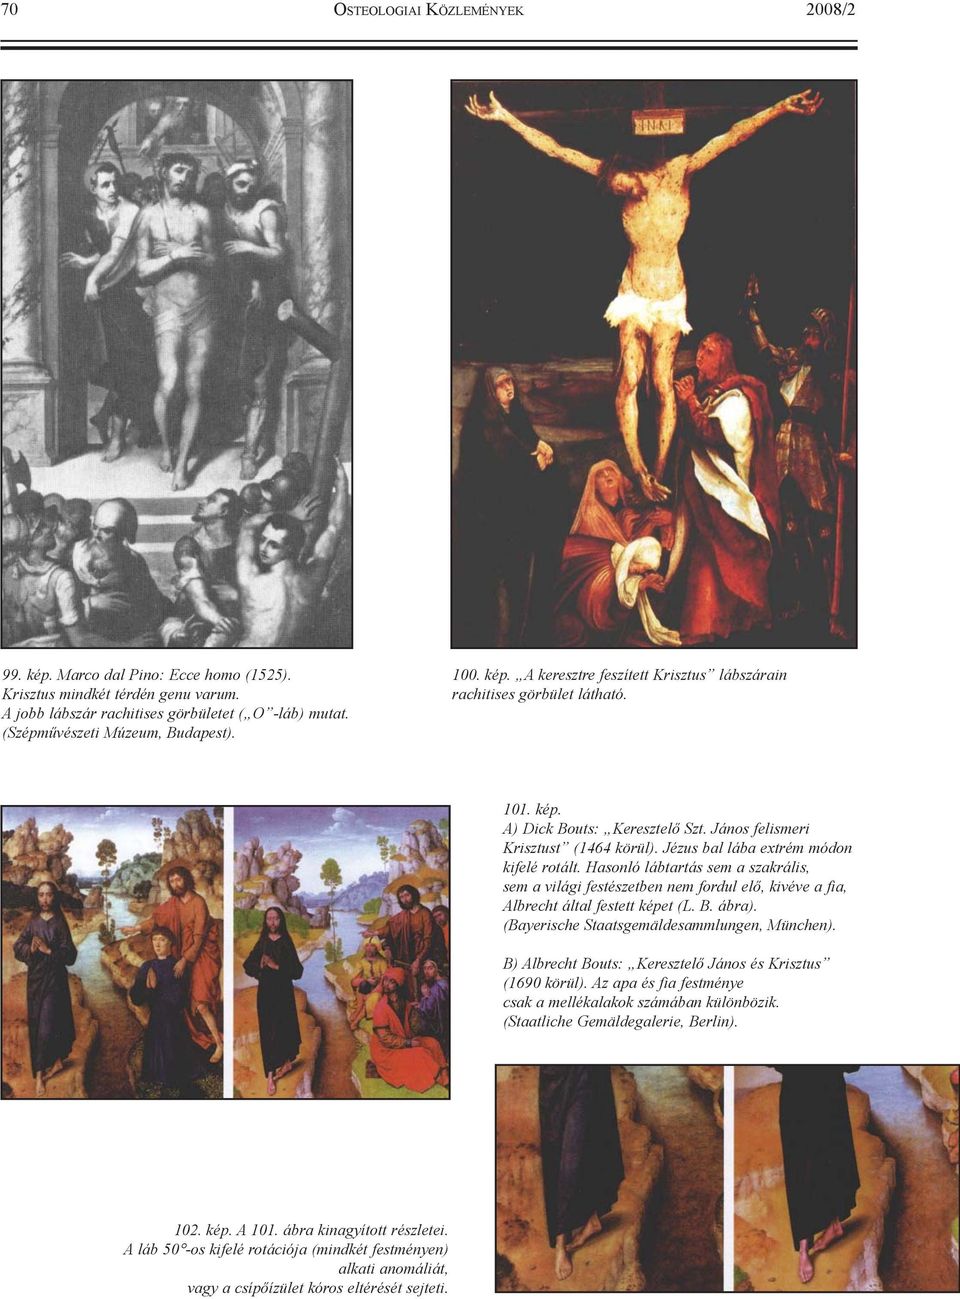 Jézus bal lába extrém módon kifelé rotált. Hasonló lábtartás sem a szakrális, sem a világi festészetben nem fordul elõ, kivéve a fia, Albrecht által festett képet (L. B. ábra).